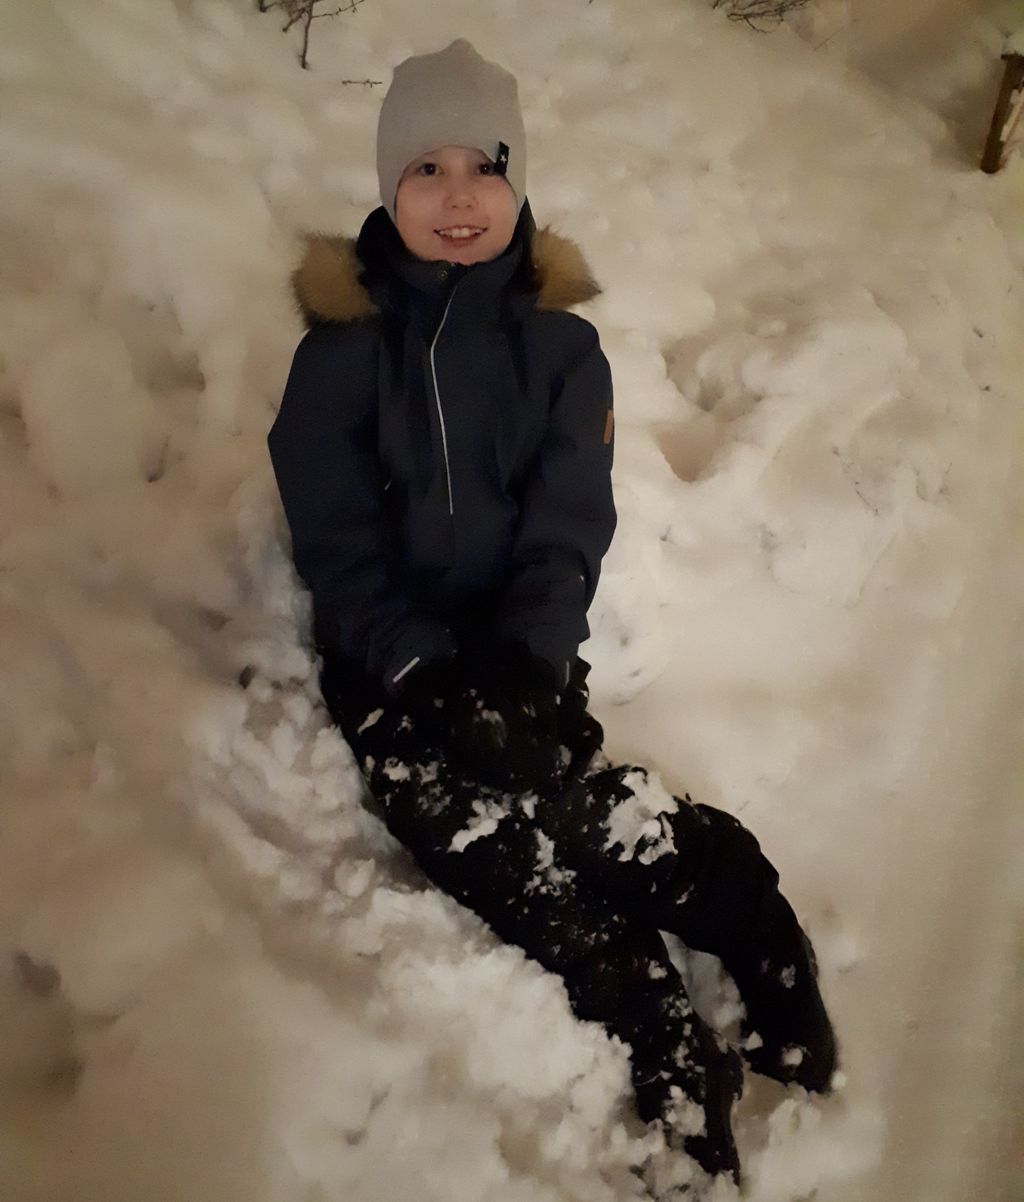 Lauri, 8, kellahti koulutiellä kumoon ja sai idean – kerää nyt lapion varressa rahaa eläimille: ”Soitin isille ja sanoin, että voisin mennä tekemään lumitöitä”